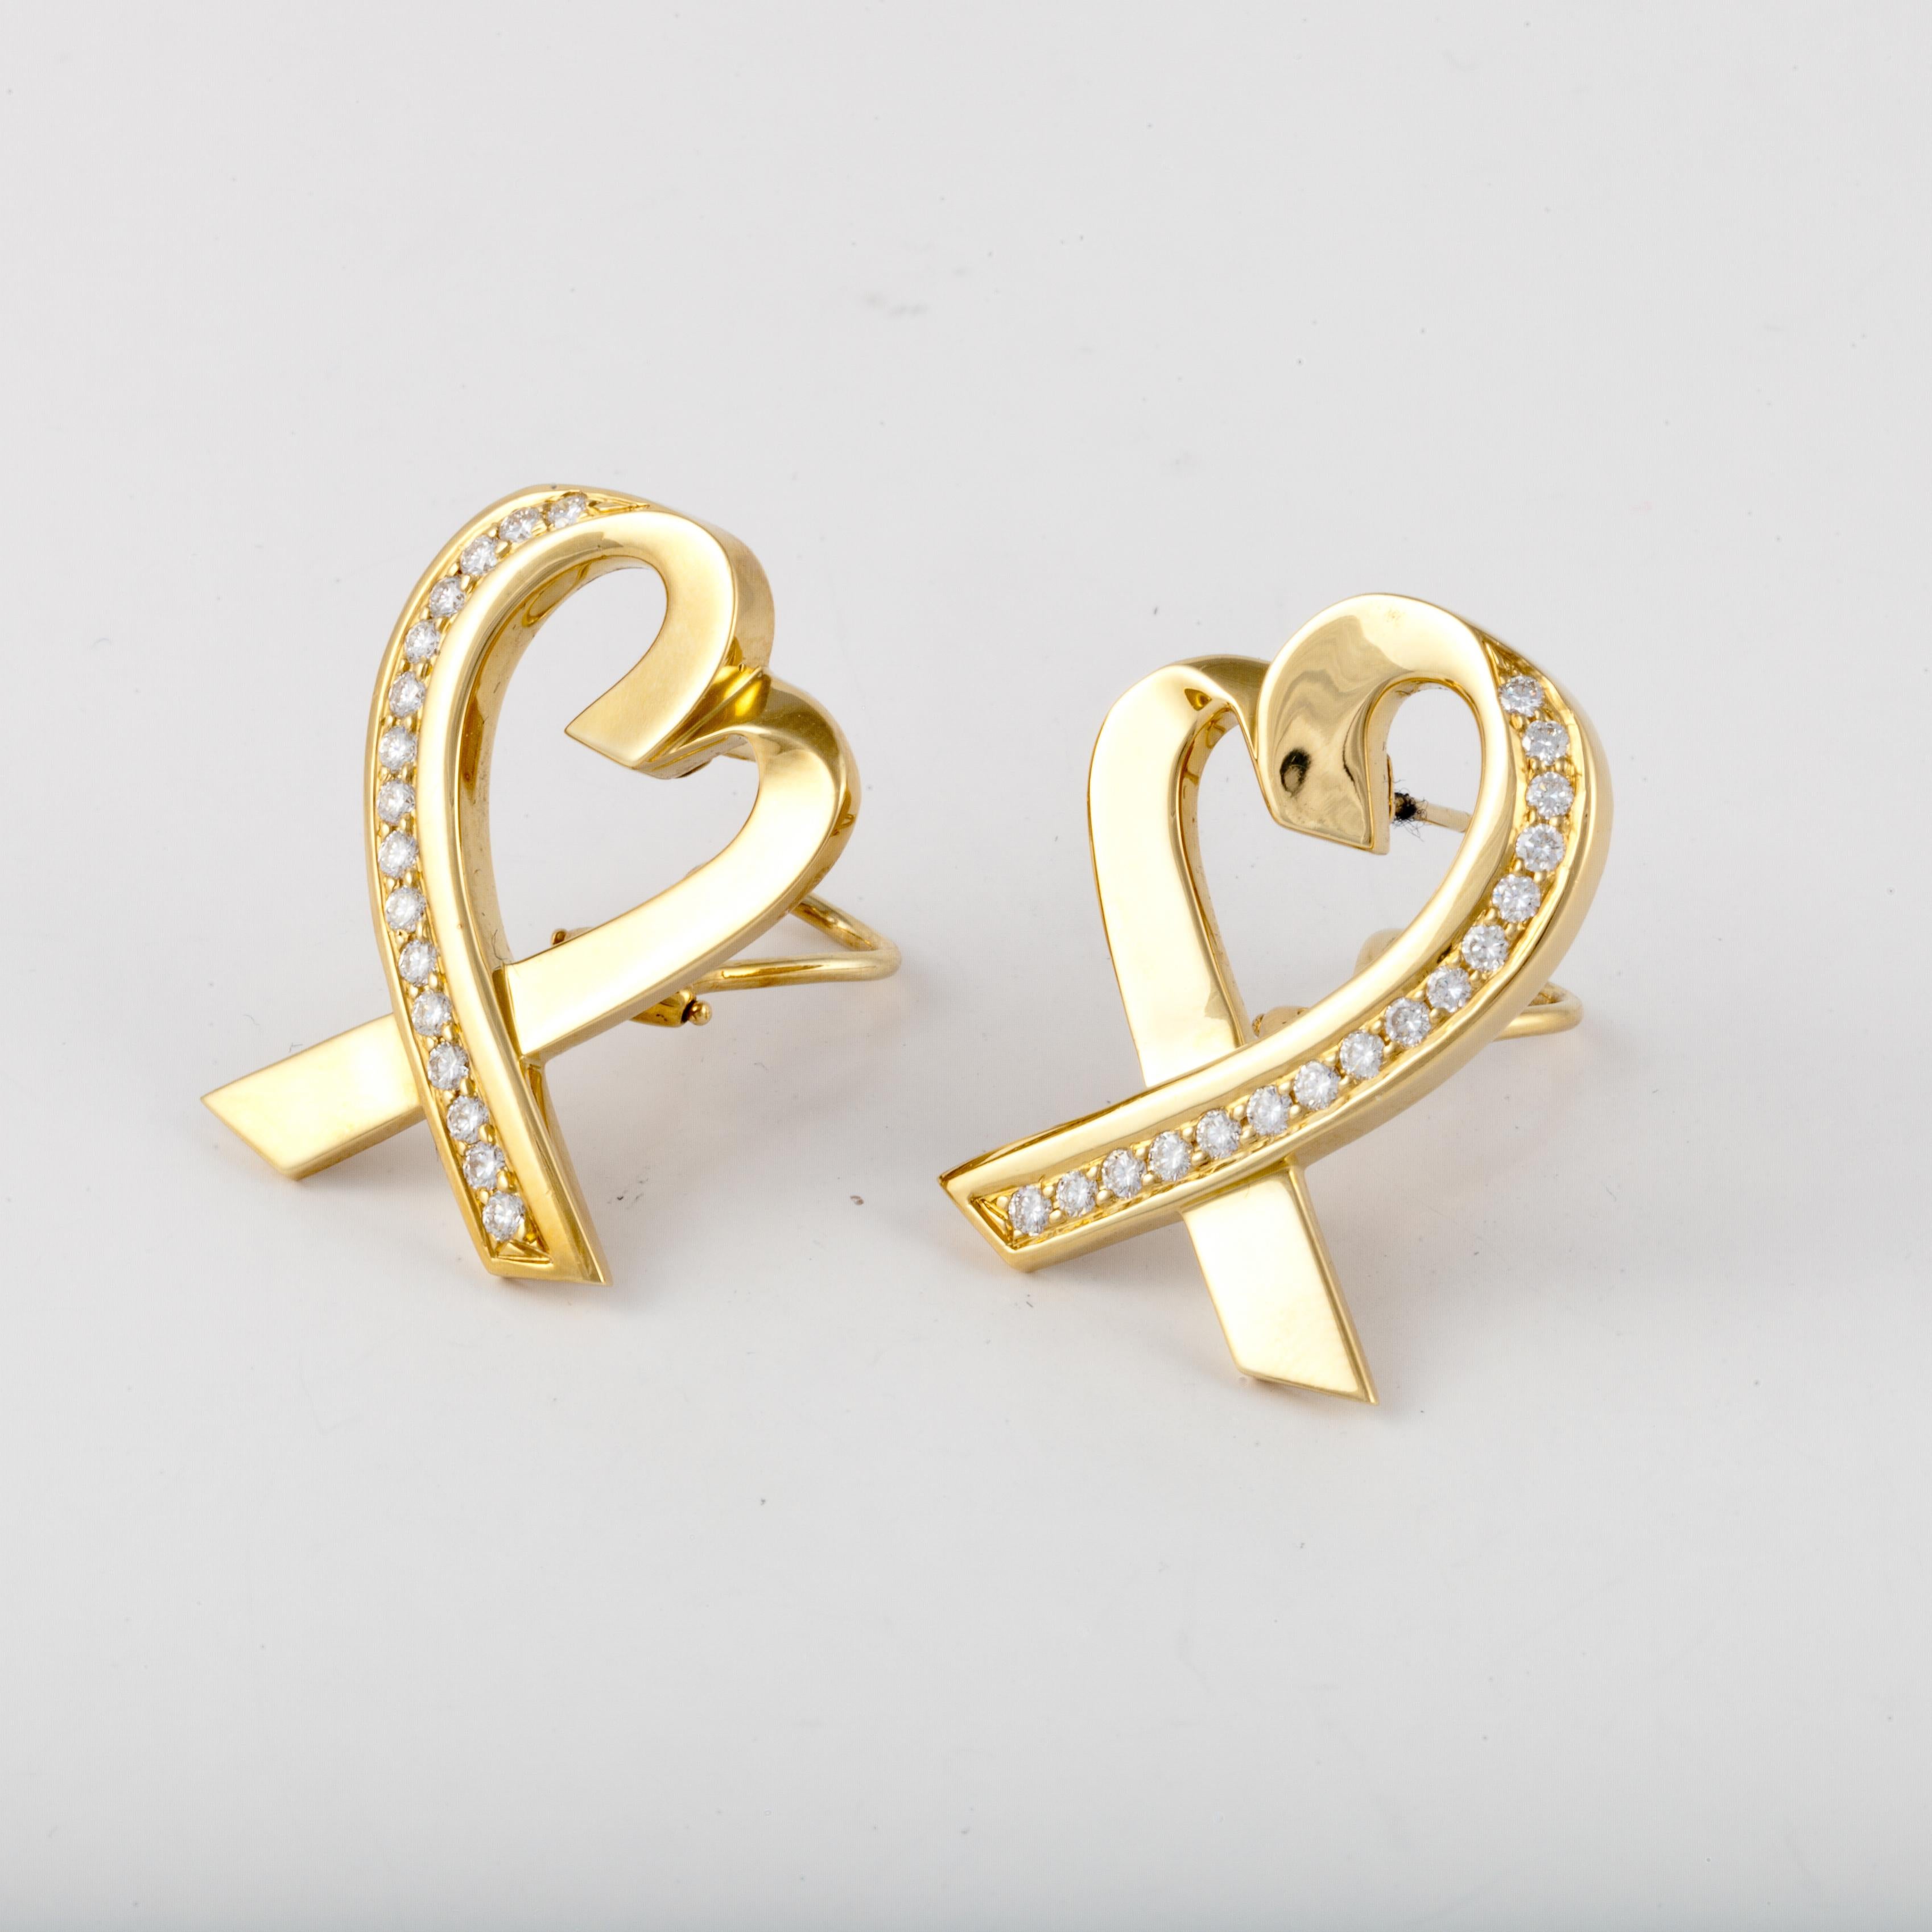 Tiffany & Co. Boucles d'oreilles Paloma Picasso en or jaune 18K en forme de cœur, rehaussées de diamants ronds.  Le poids total en carats des diamants est de 1,25 ; couleur F-G et pureté VVS-VS.  Ils mesurent 1 1/4 pouces sur 7/8 pouces.  